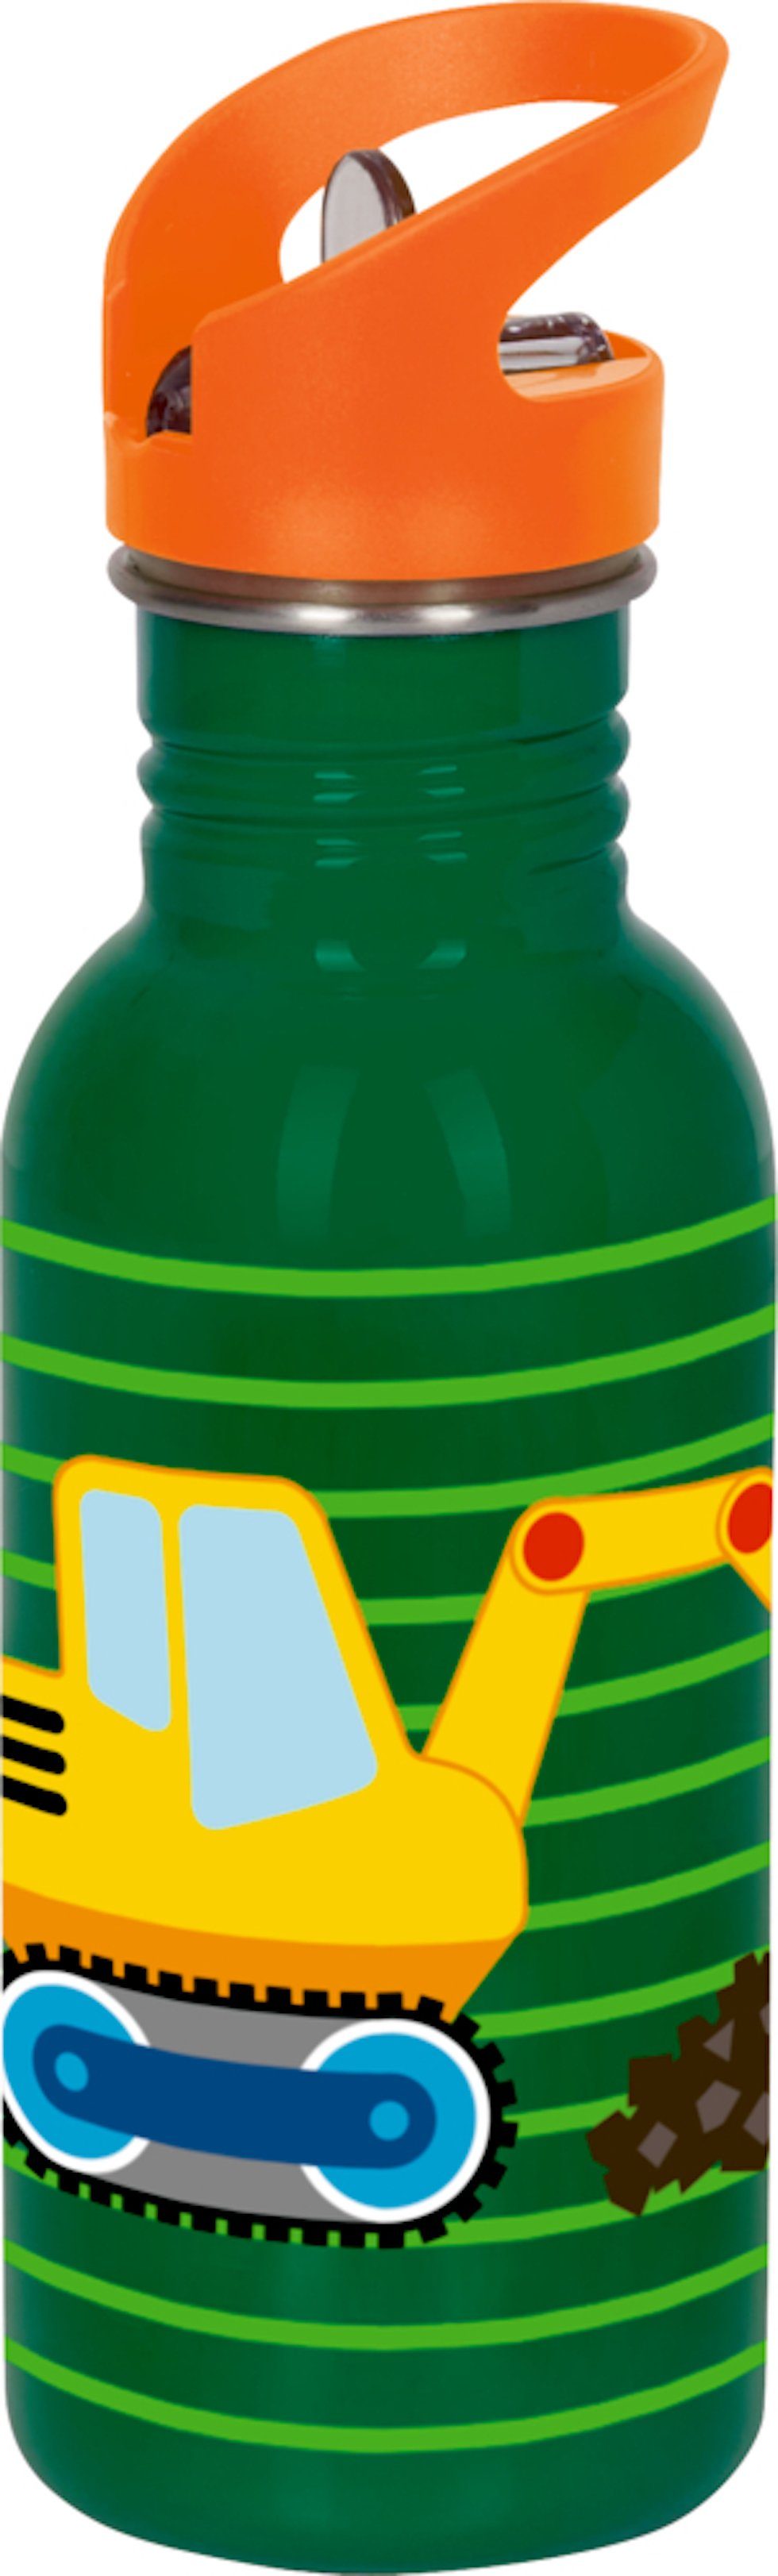 sichere bin, groß Trinkflasche mal l, SPIEGELBURG Wenn Edelstahlflasche ich DIE und Bagger ansprechende grün, Trinklösung COPPENRATH 0,5